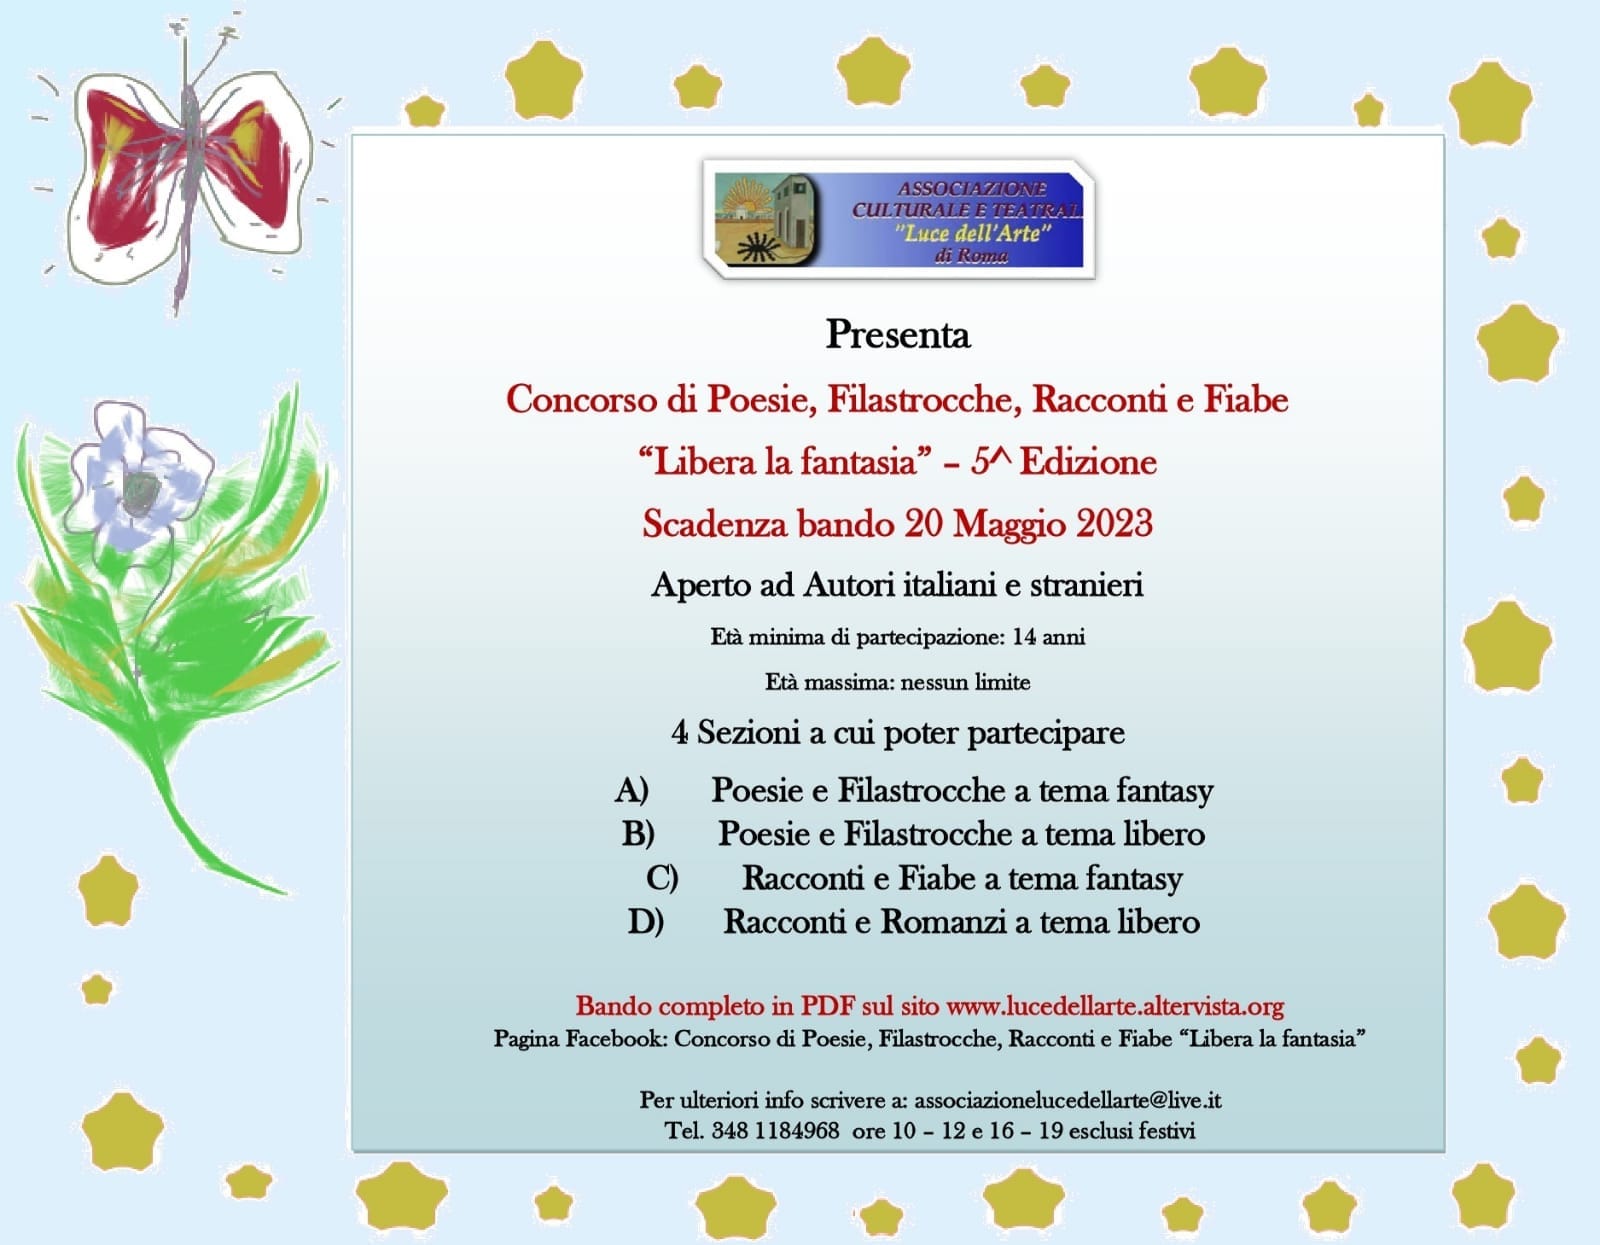 Al via il Concorso di Poesie, Filastrocche, Racconti e Fiabe "Libera la fantasia" 5^ Edizione! Tante novità per i vincitori! Scade il 20/05/2023